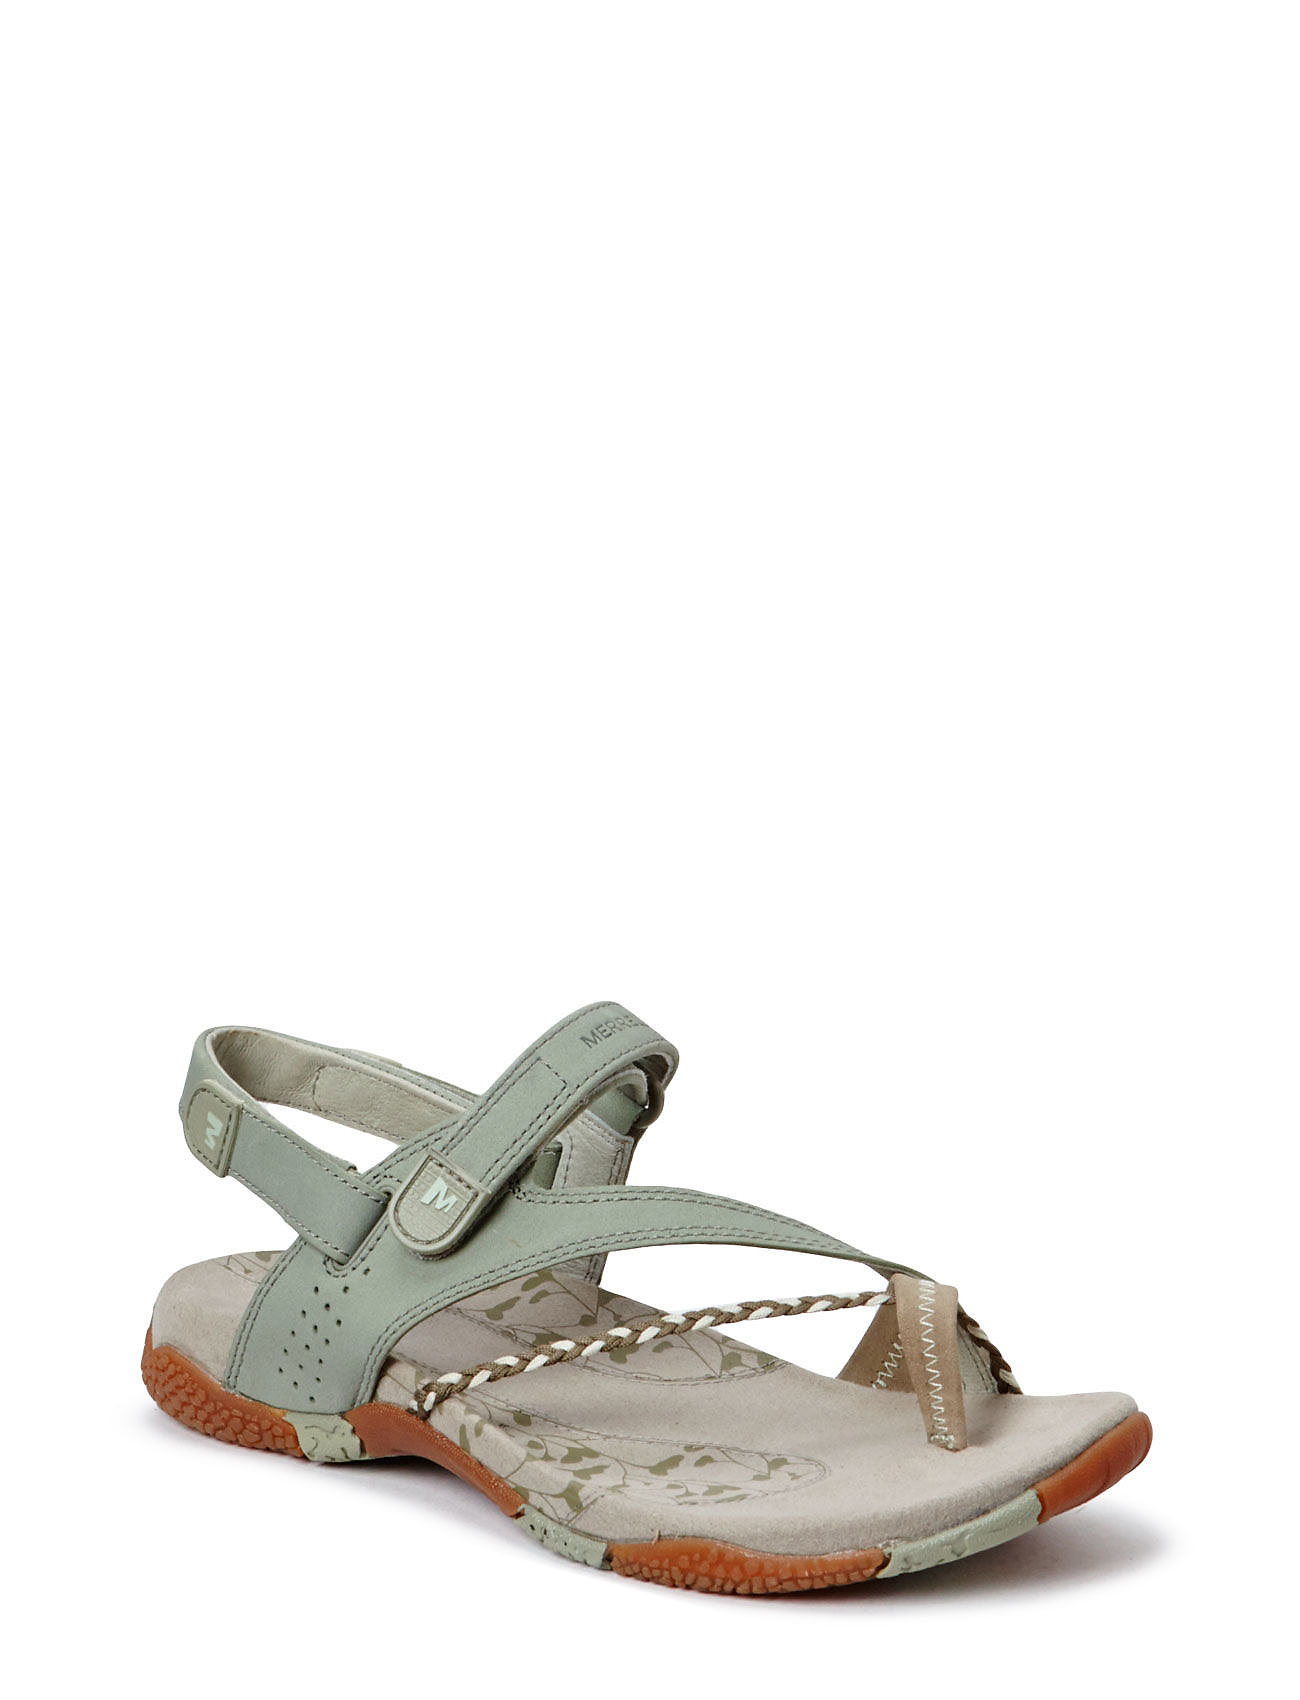 Merrell Women's - Flat sandals | Boozt.com